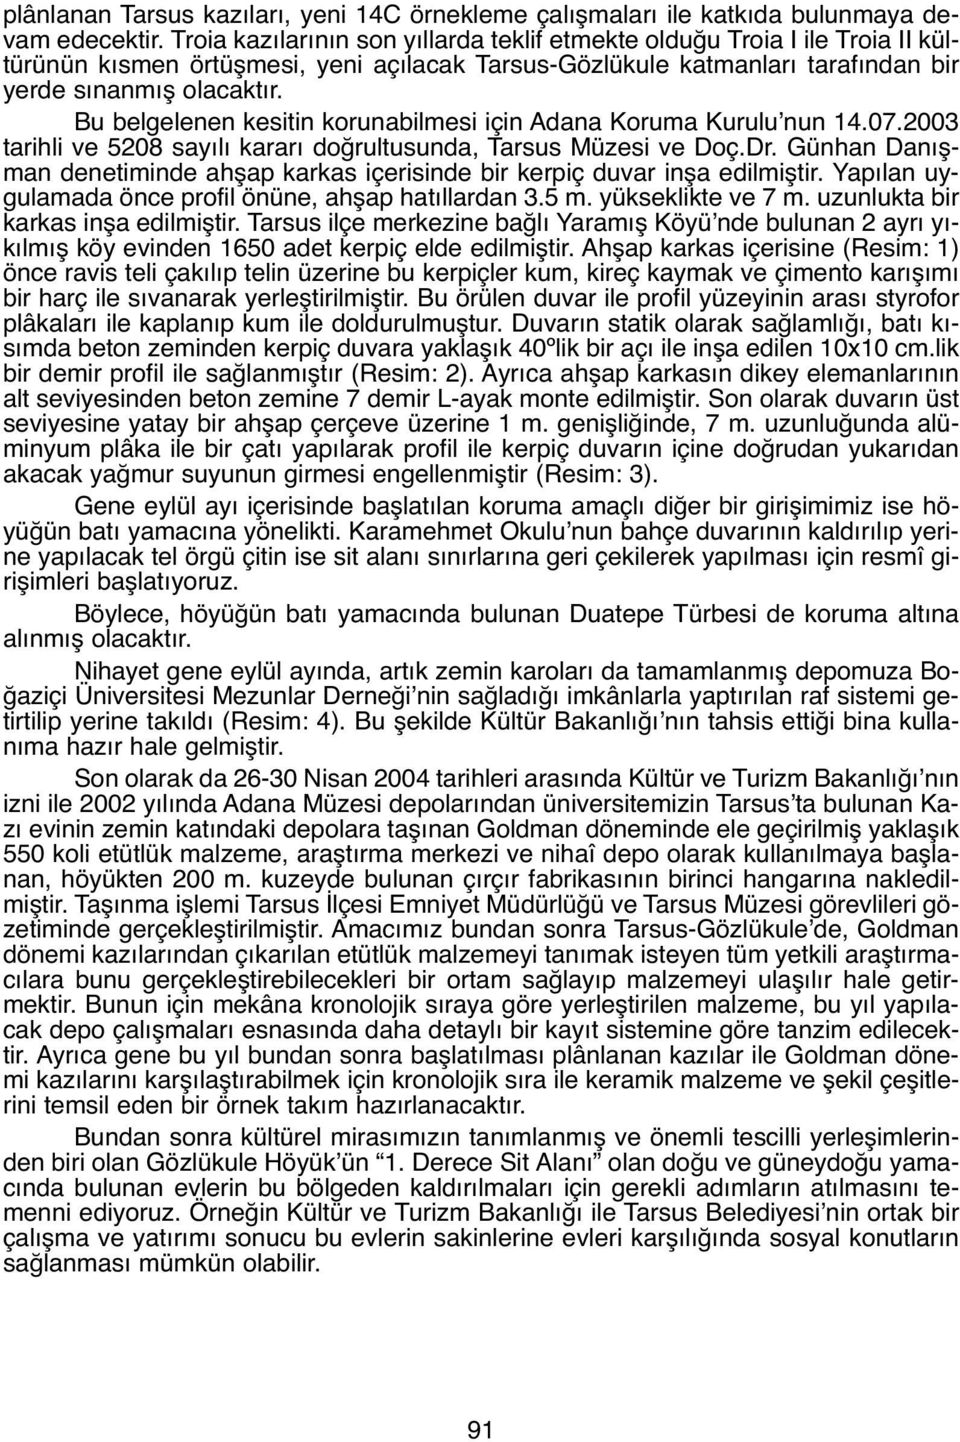 Bu belgelenen kesitin korunabilmesi için Adana Koruma Kurulu nun 14.07.2003 tarihli ve 5208 sayılı kararı doğrultusunda, Tarsus Müzesi ve Doç.Dr.